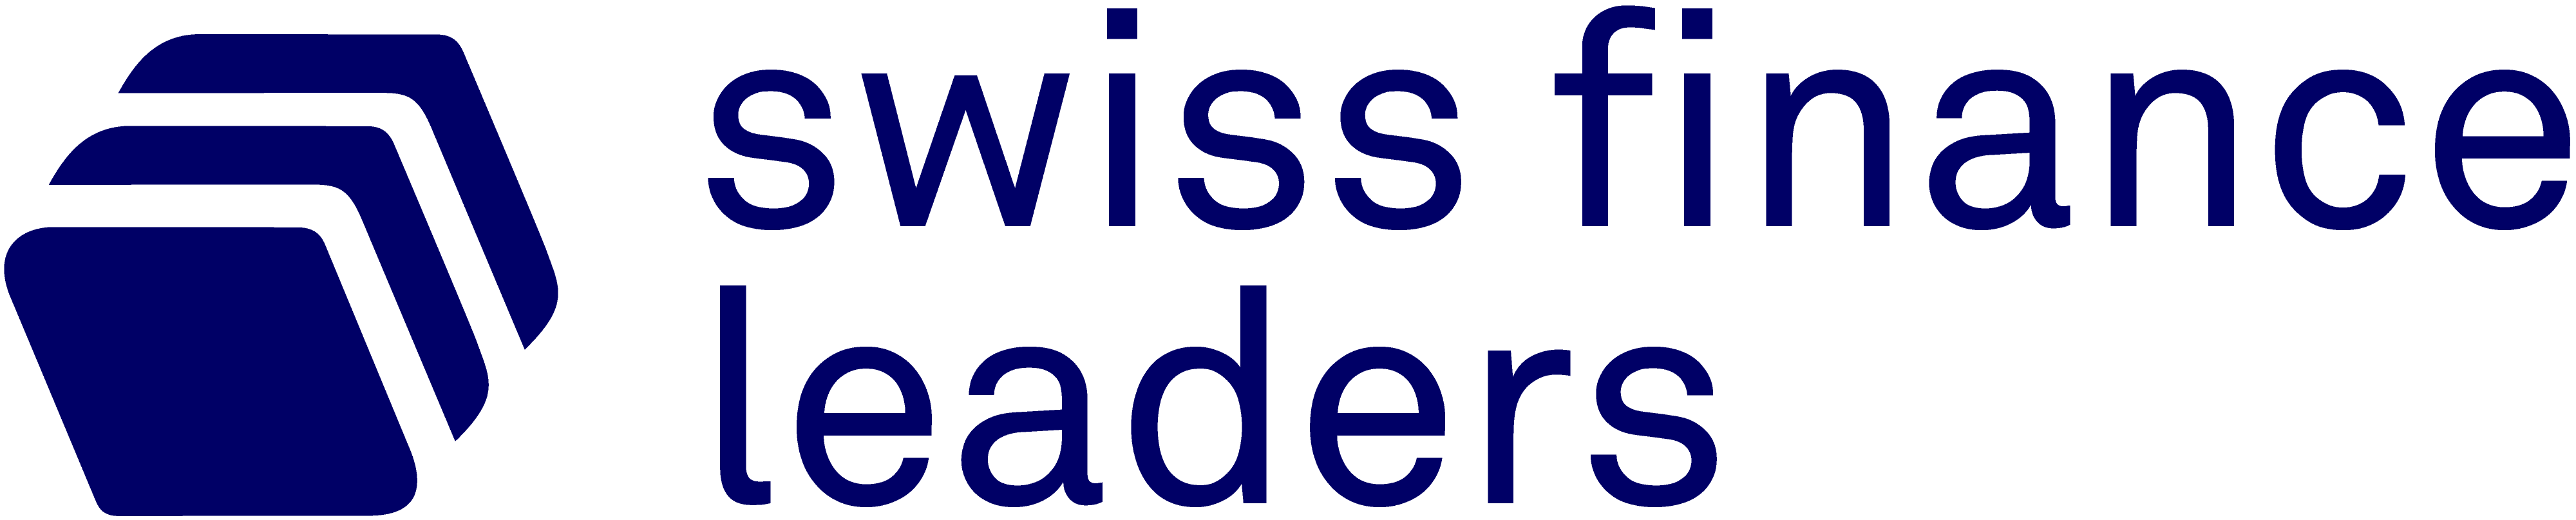 Swiss Finance Leaders